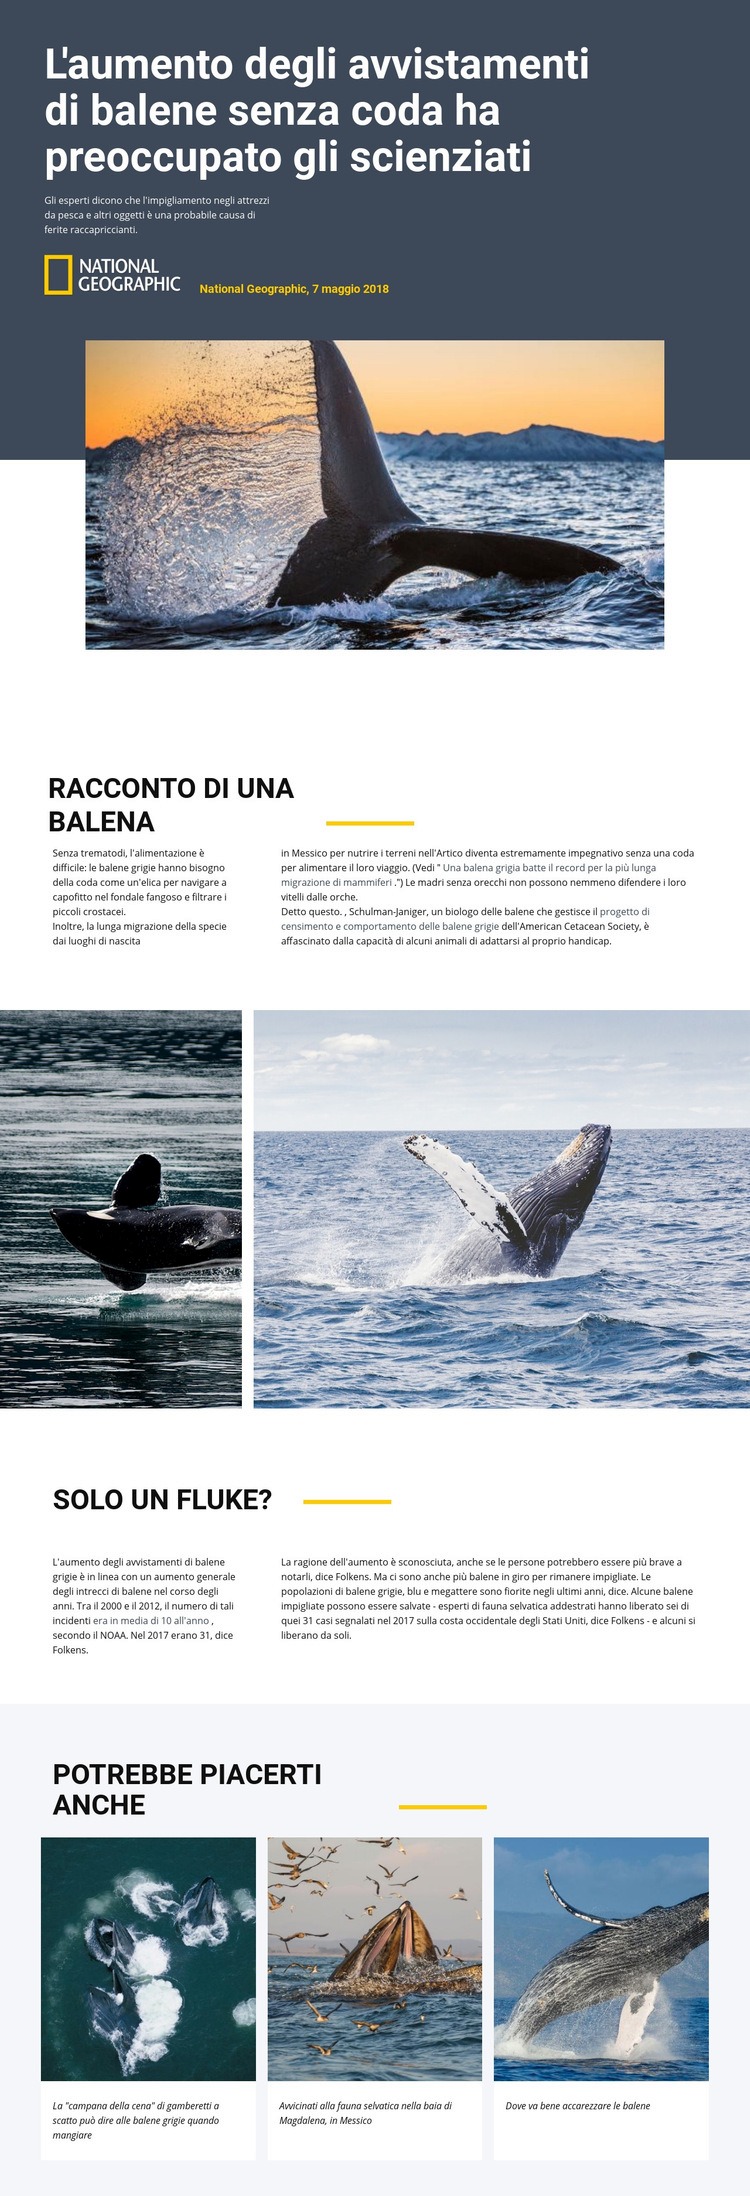 Centro di osservazione delle balene Mockup del sito web